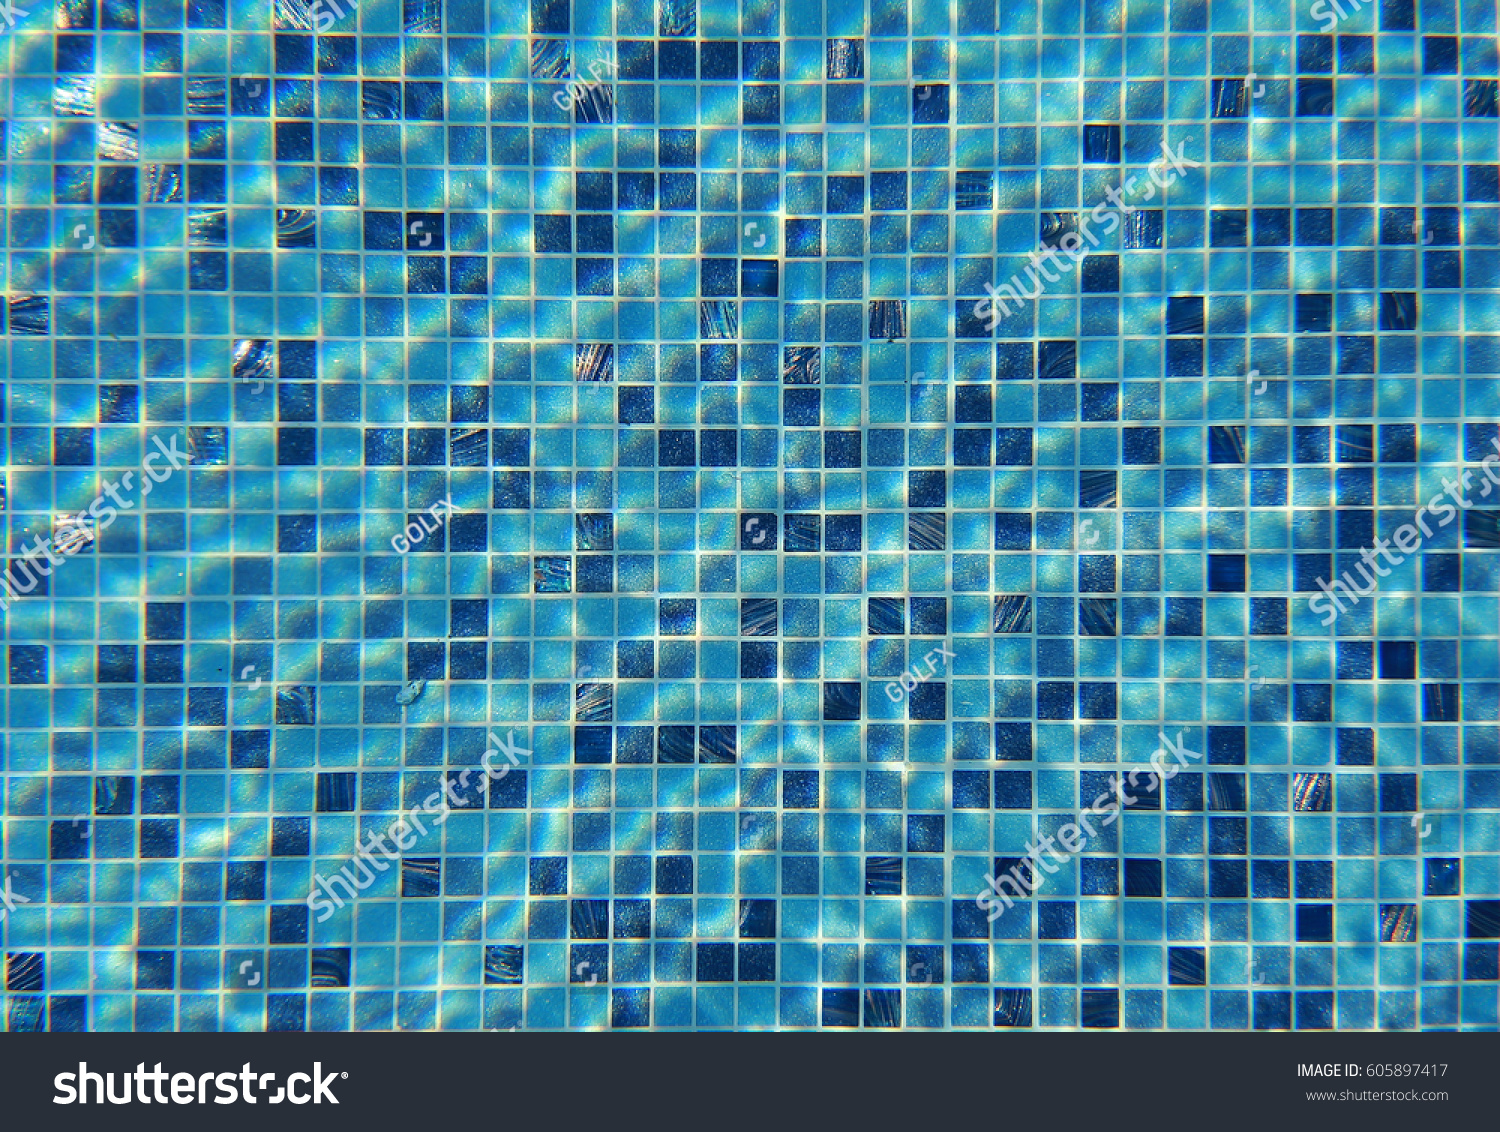 3,290 Sea aqua mosaic tiles Images, Stock Photos & Vectors | Shutterstock